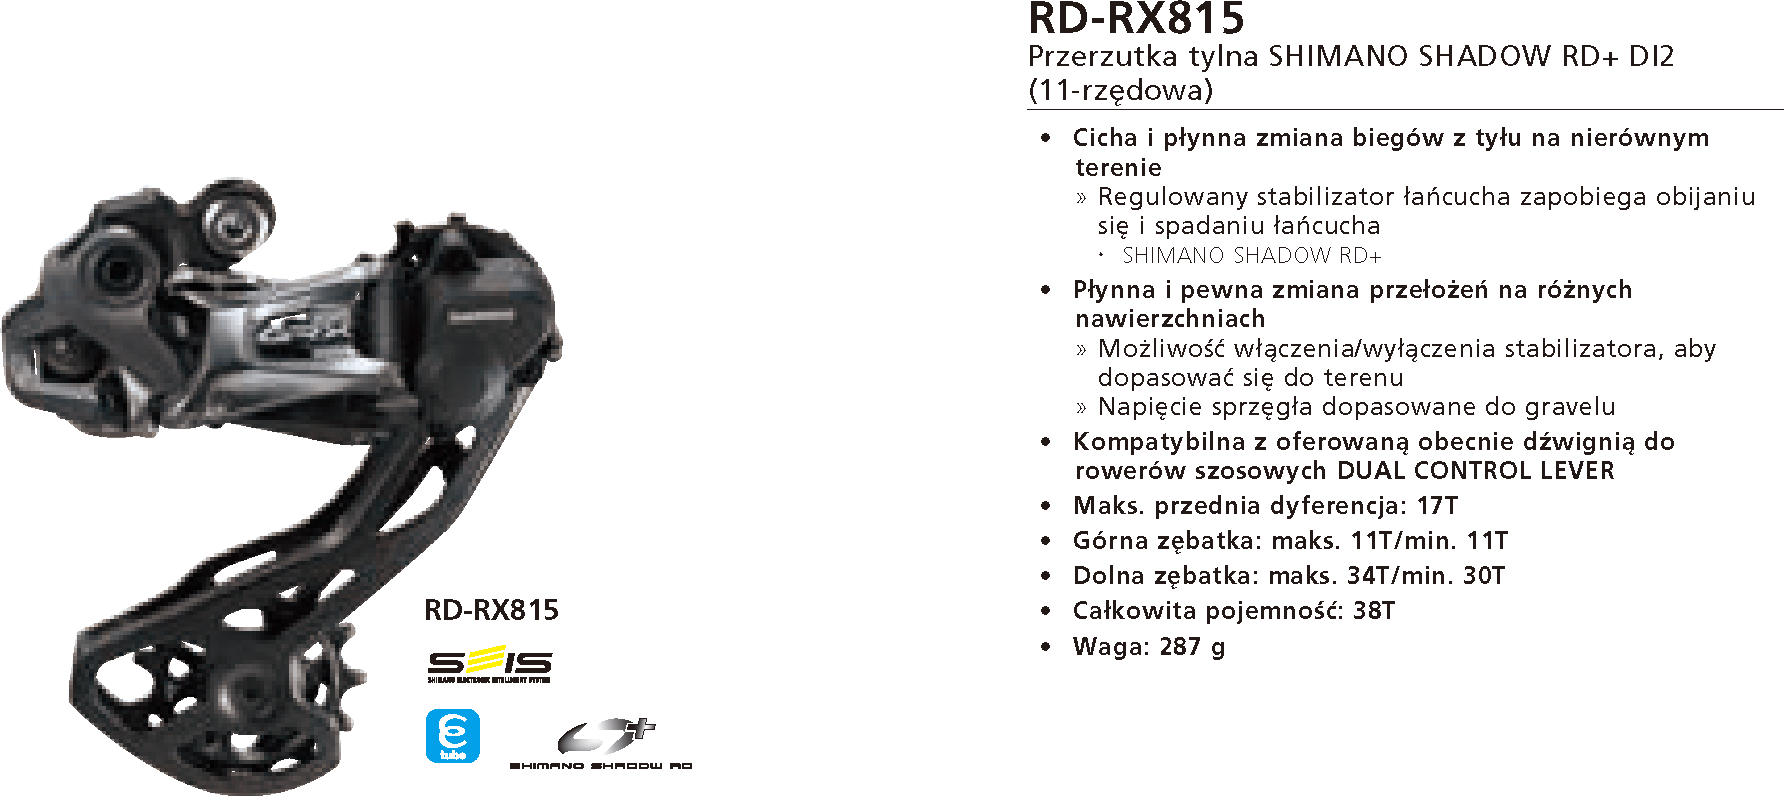 Przerzutka tylna Shimano GRX RD-RX815 Di2